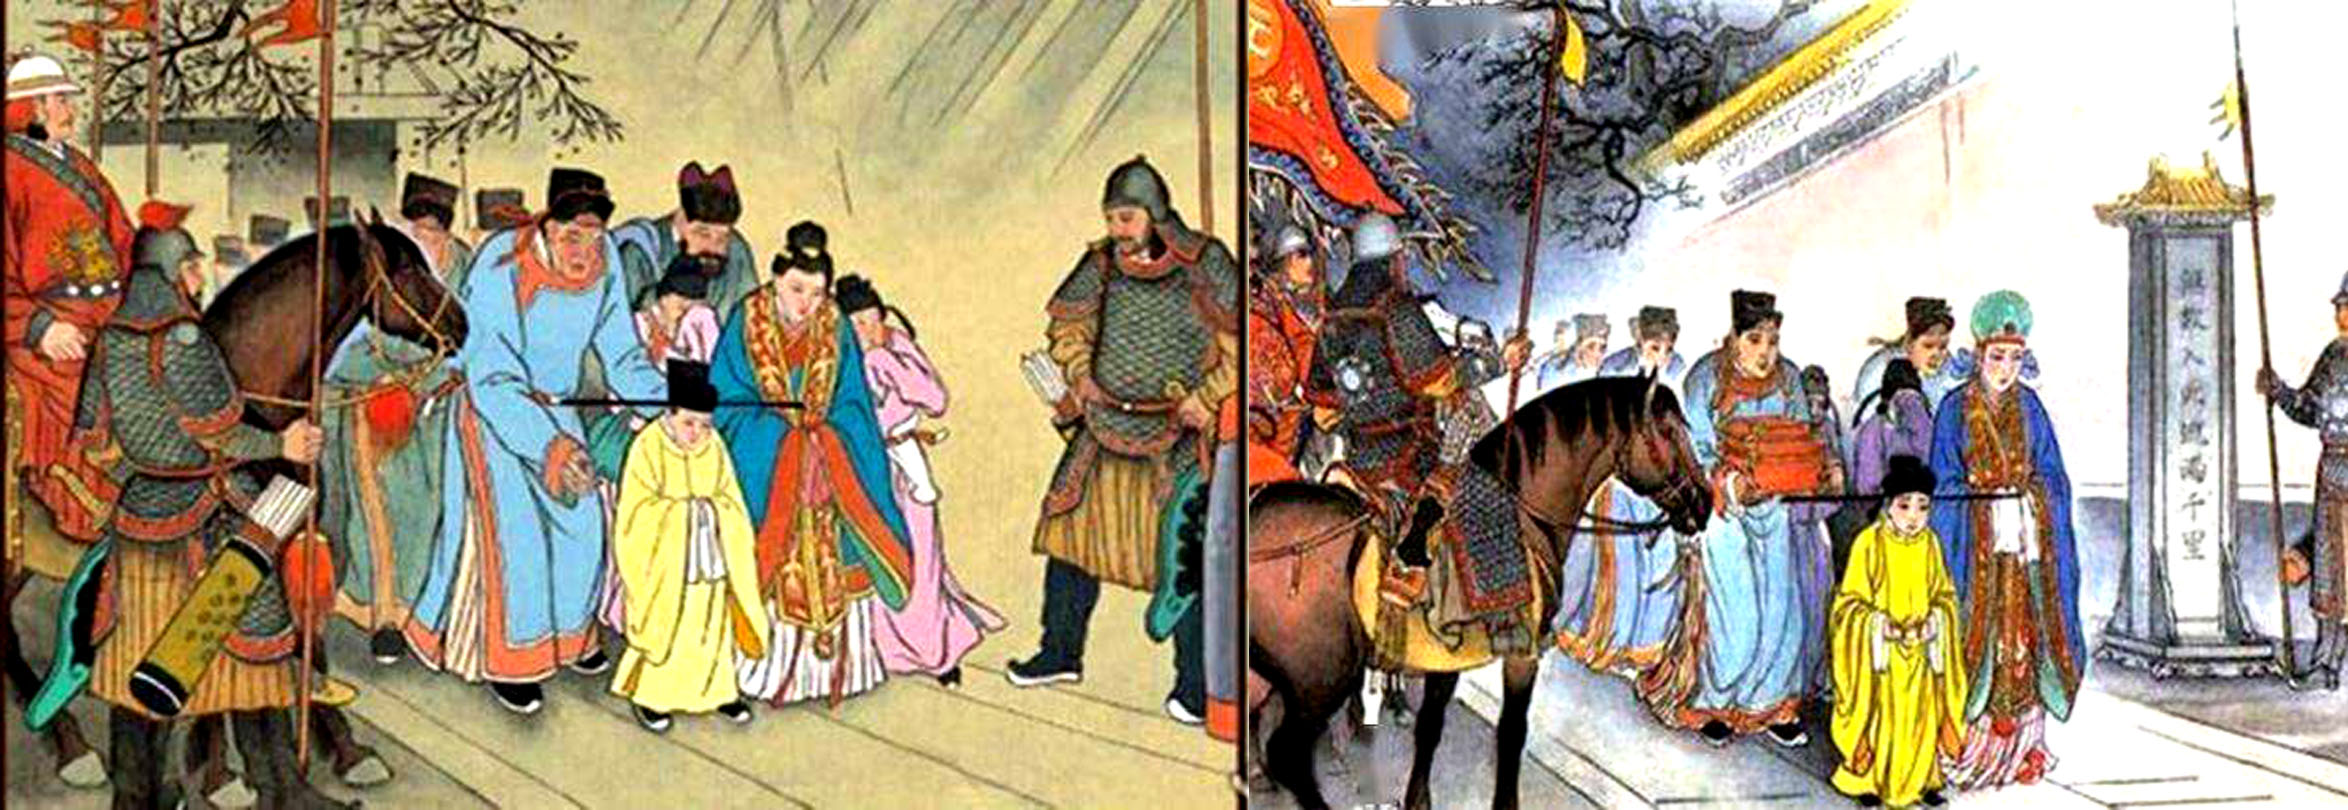 中国历代皇帝之最终极盘点，数百位皇帝的奇葩排行（宋代至清代）